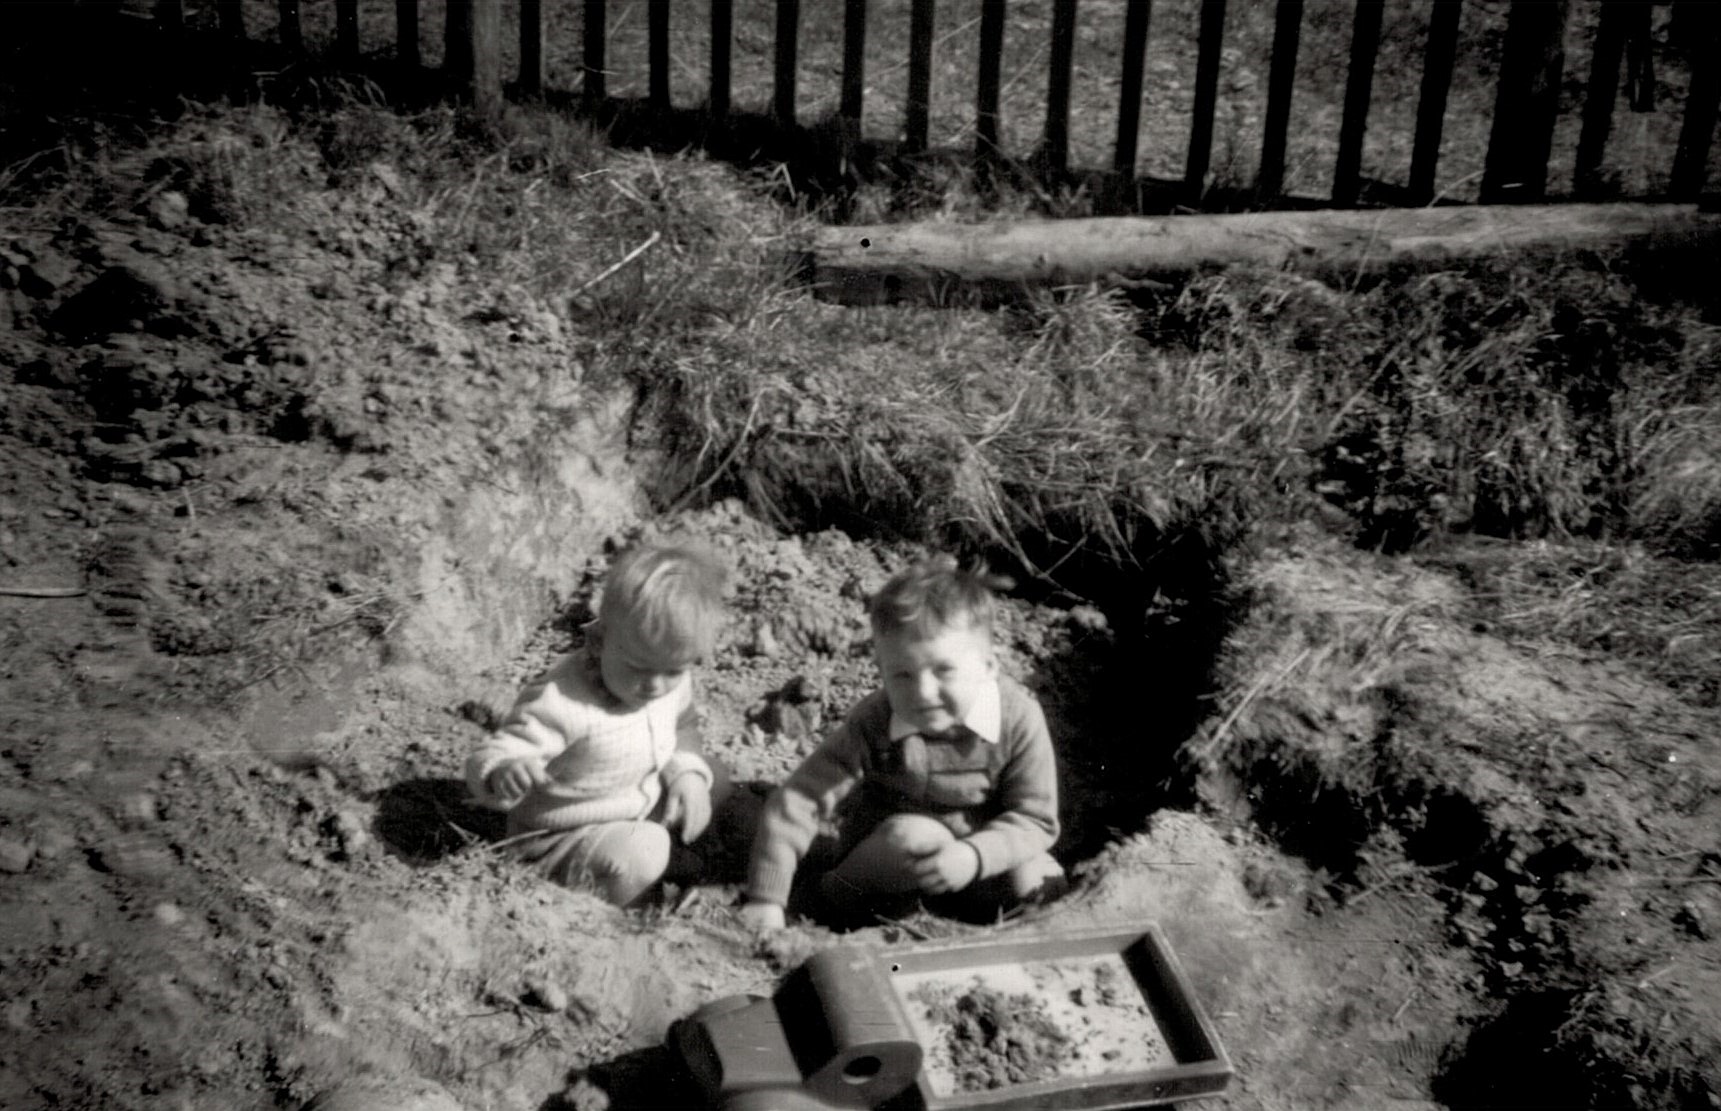 John och Kurt leker ovanpå den nyss uppgrävda "dyngbrånnin" som fanns precis utanför köksfönstret. Fotot från ca 1956.